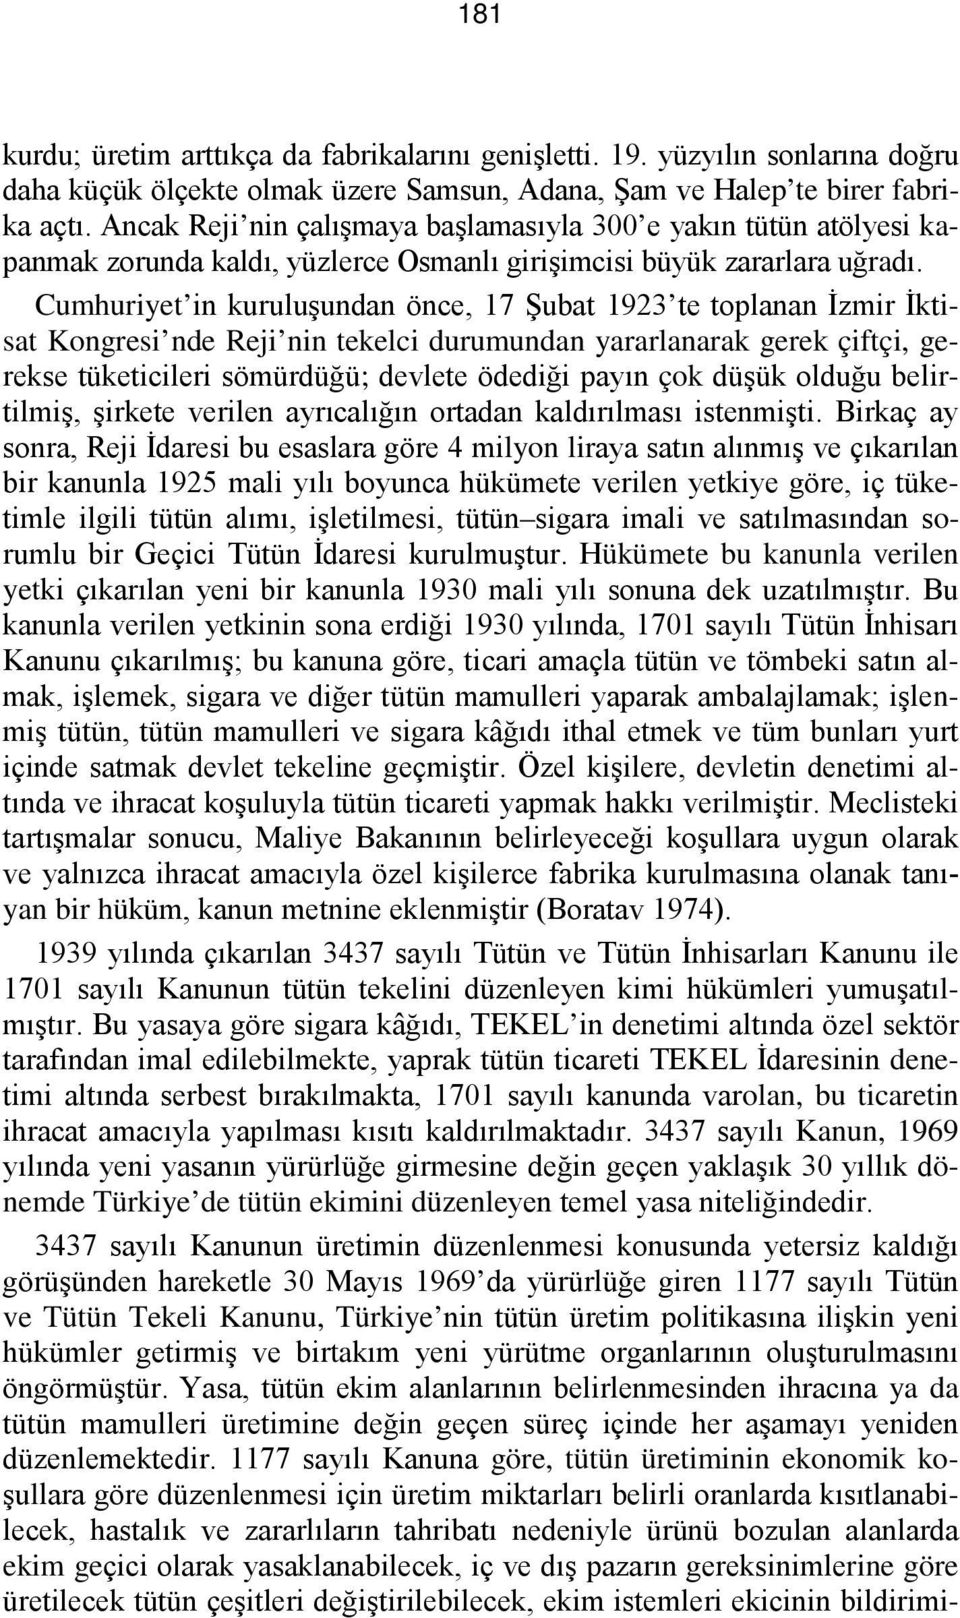 Cumhuriyet in kuruluşundan önce, 17 Şubat 1923 te toplanan İzmir İktisat Kongresi nde Reji nin tekelci durumundan yararlanarak gerek çiftçi, gerekse tüketicileri sömürdüğü; devlete ödediği payın çok